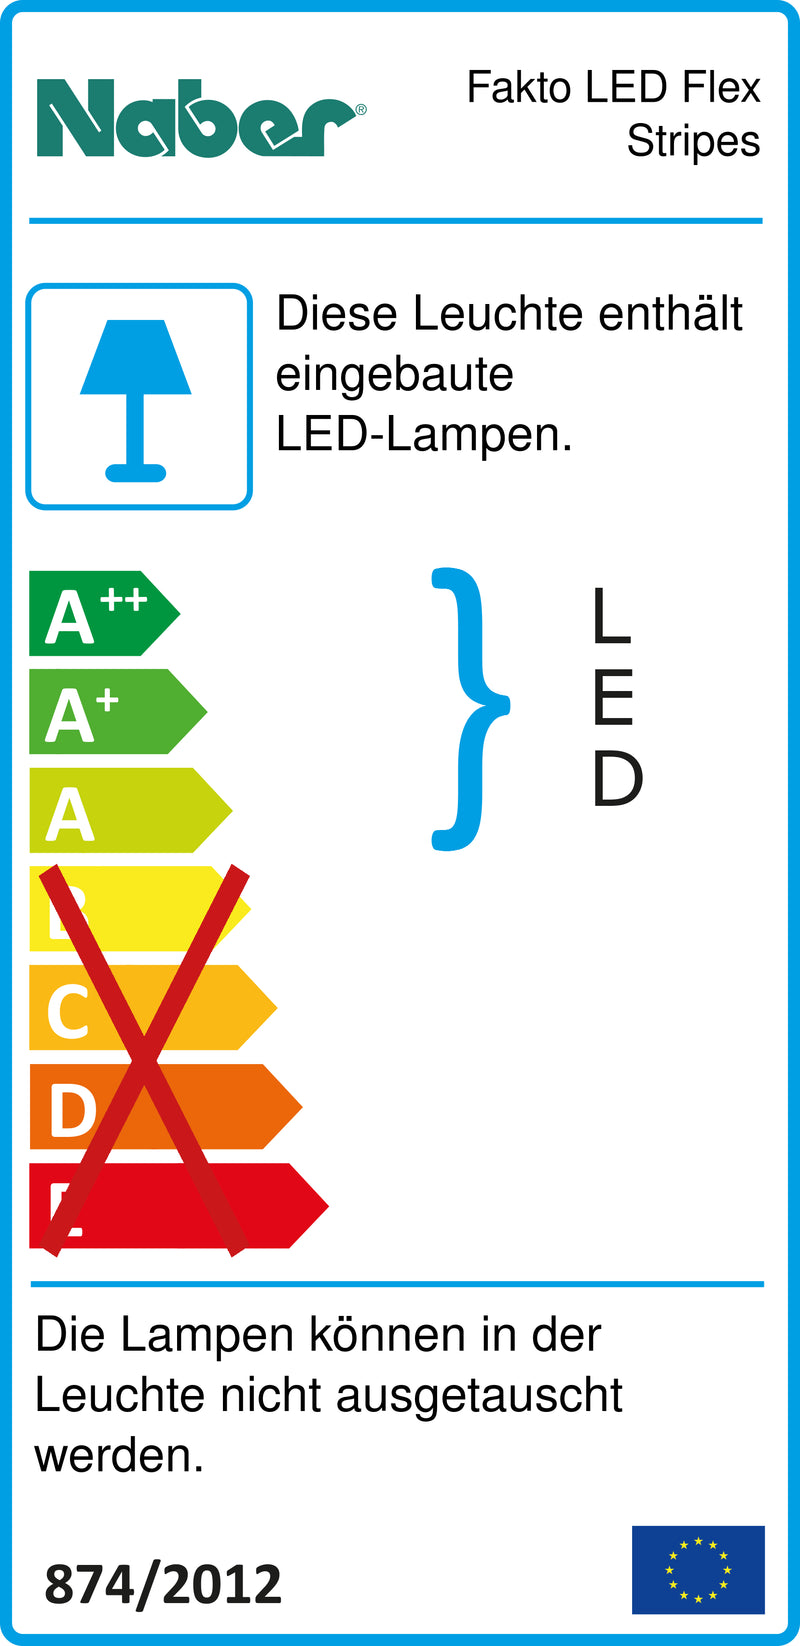 E-Label zu Zeichnung zu Fakto LED Flex Stripes als Variante L 900 mm, 4,5 W von Naber GmbH in der Kategorie Lichttechnik in Österreich auf conceptshop.at